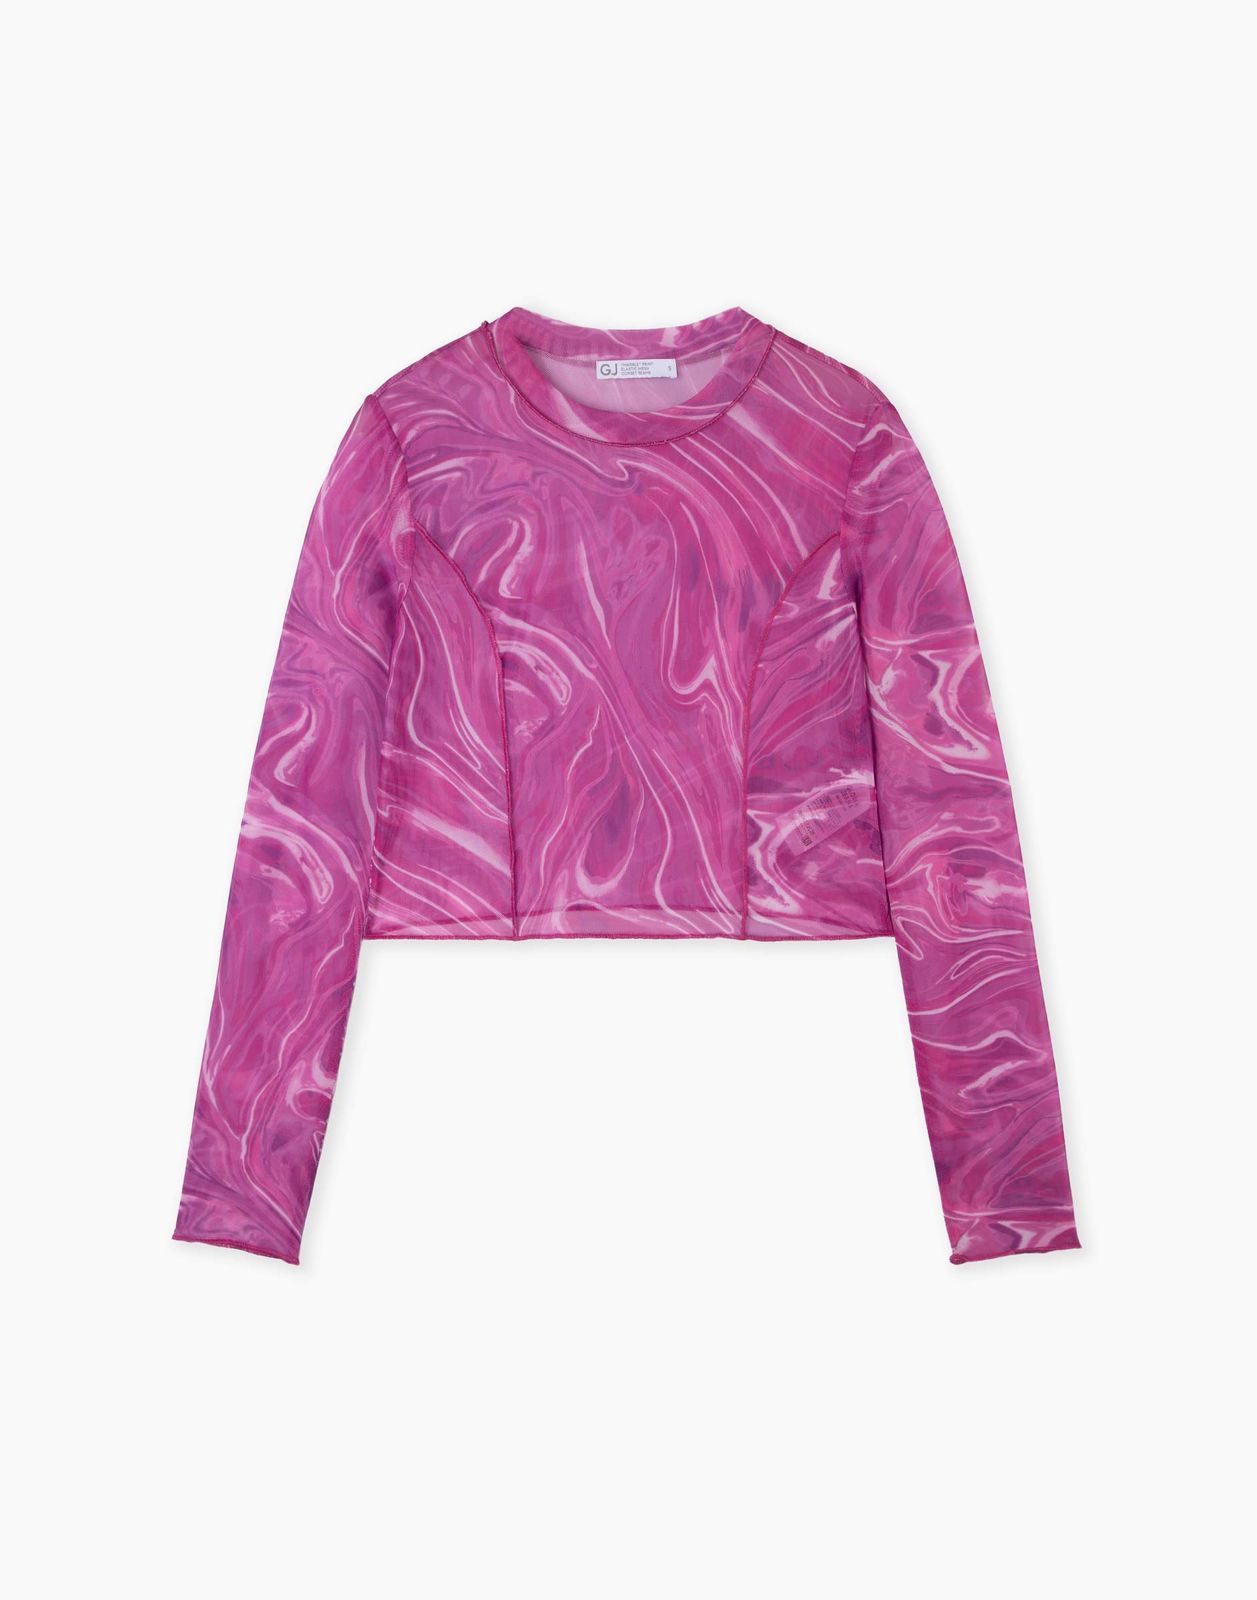 Лонгслив Gloria Jeans GKT023143 розовый/разноцветный M/170 женский